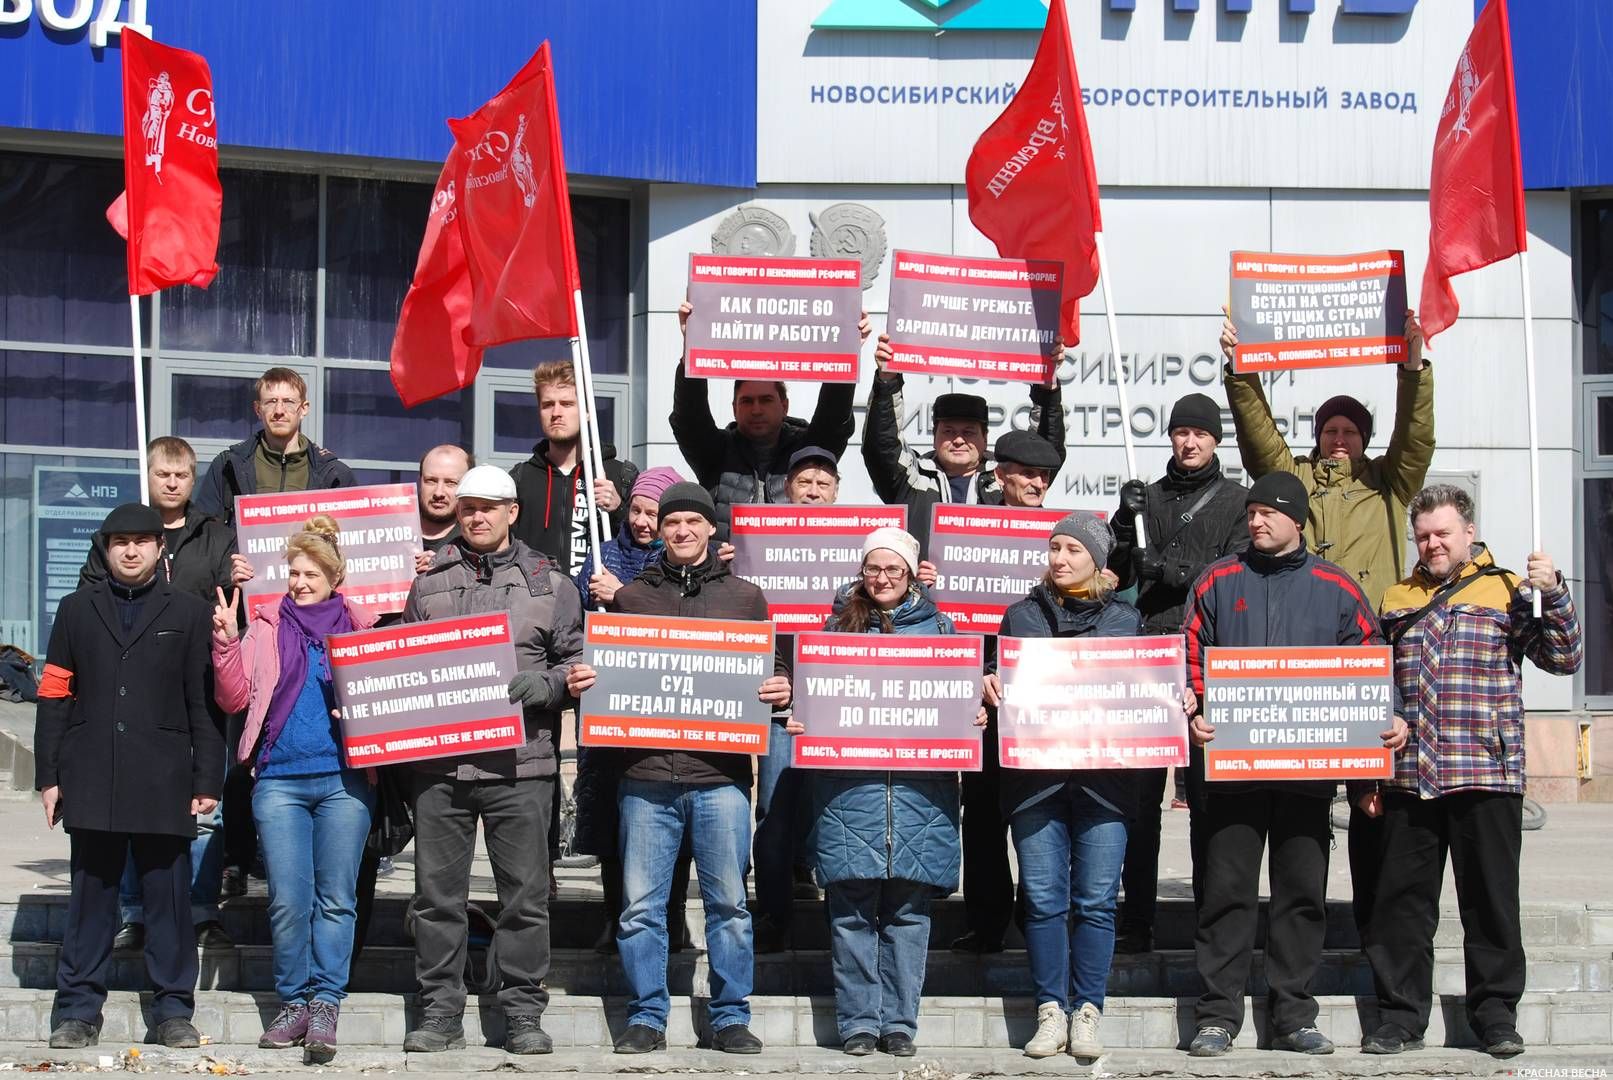 Пикет в Новосибирске против проводимой социальной политики государства 6 апреля 2019 г.